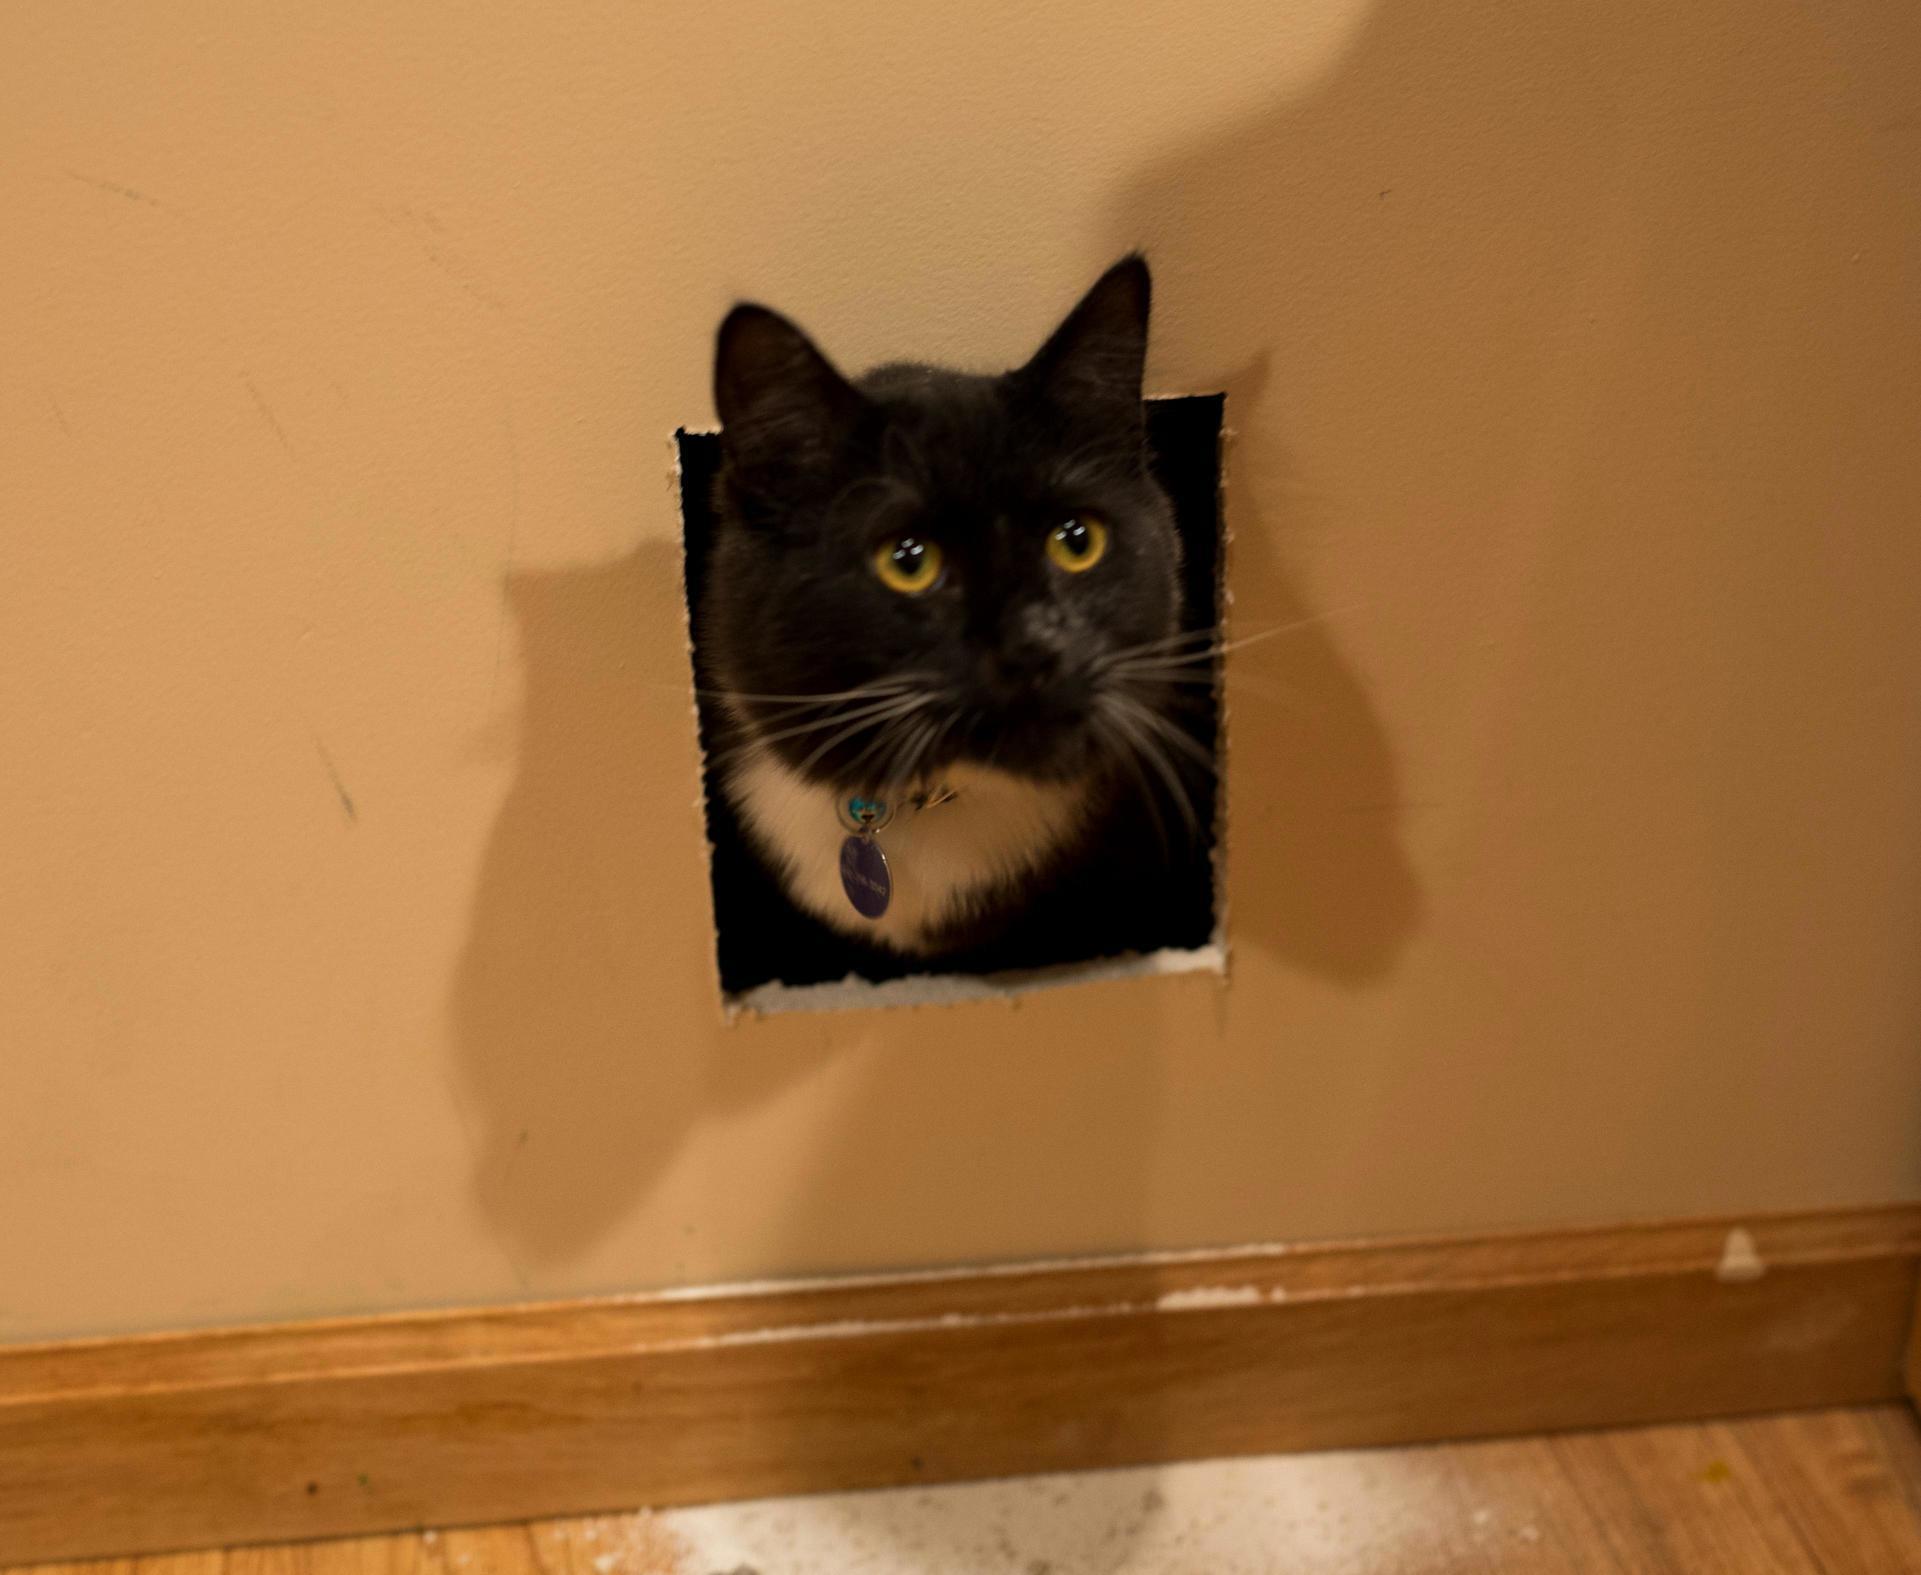 My cat got stuck in the wall last night.